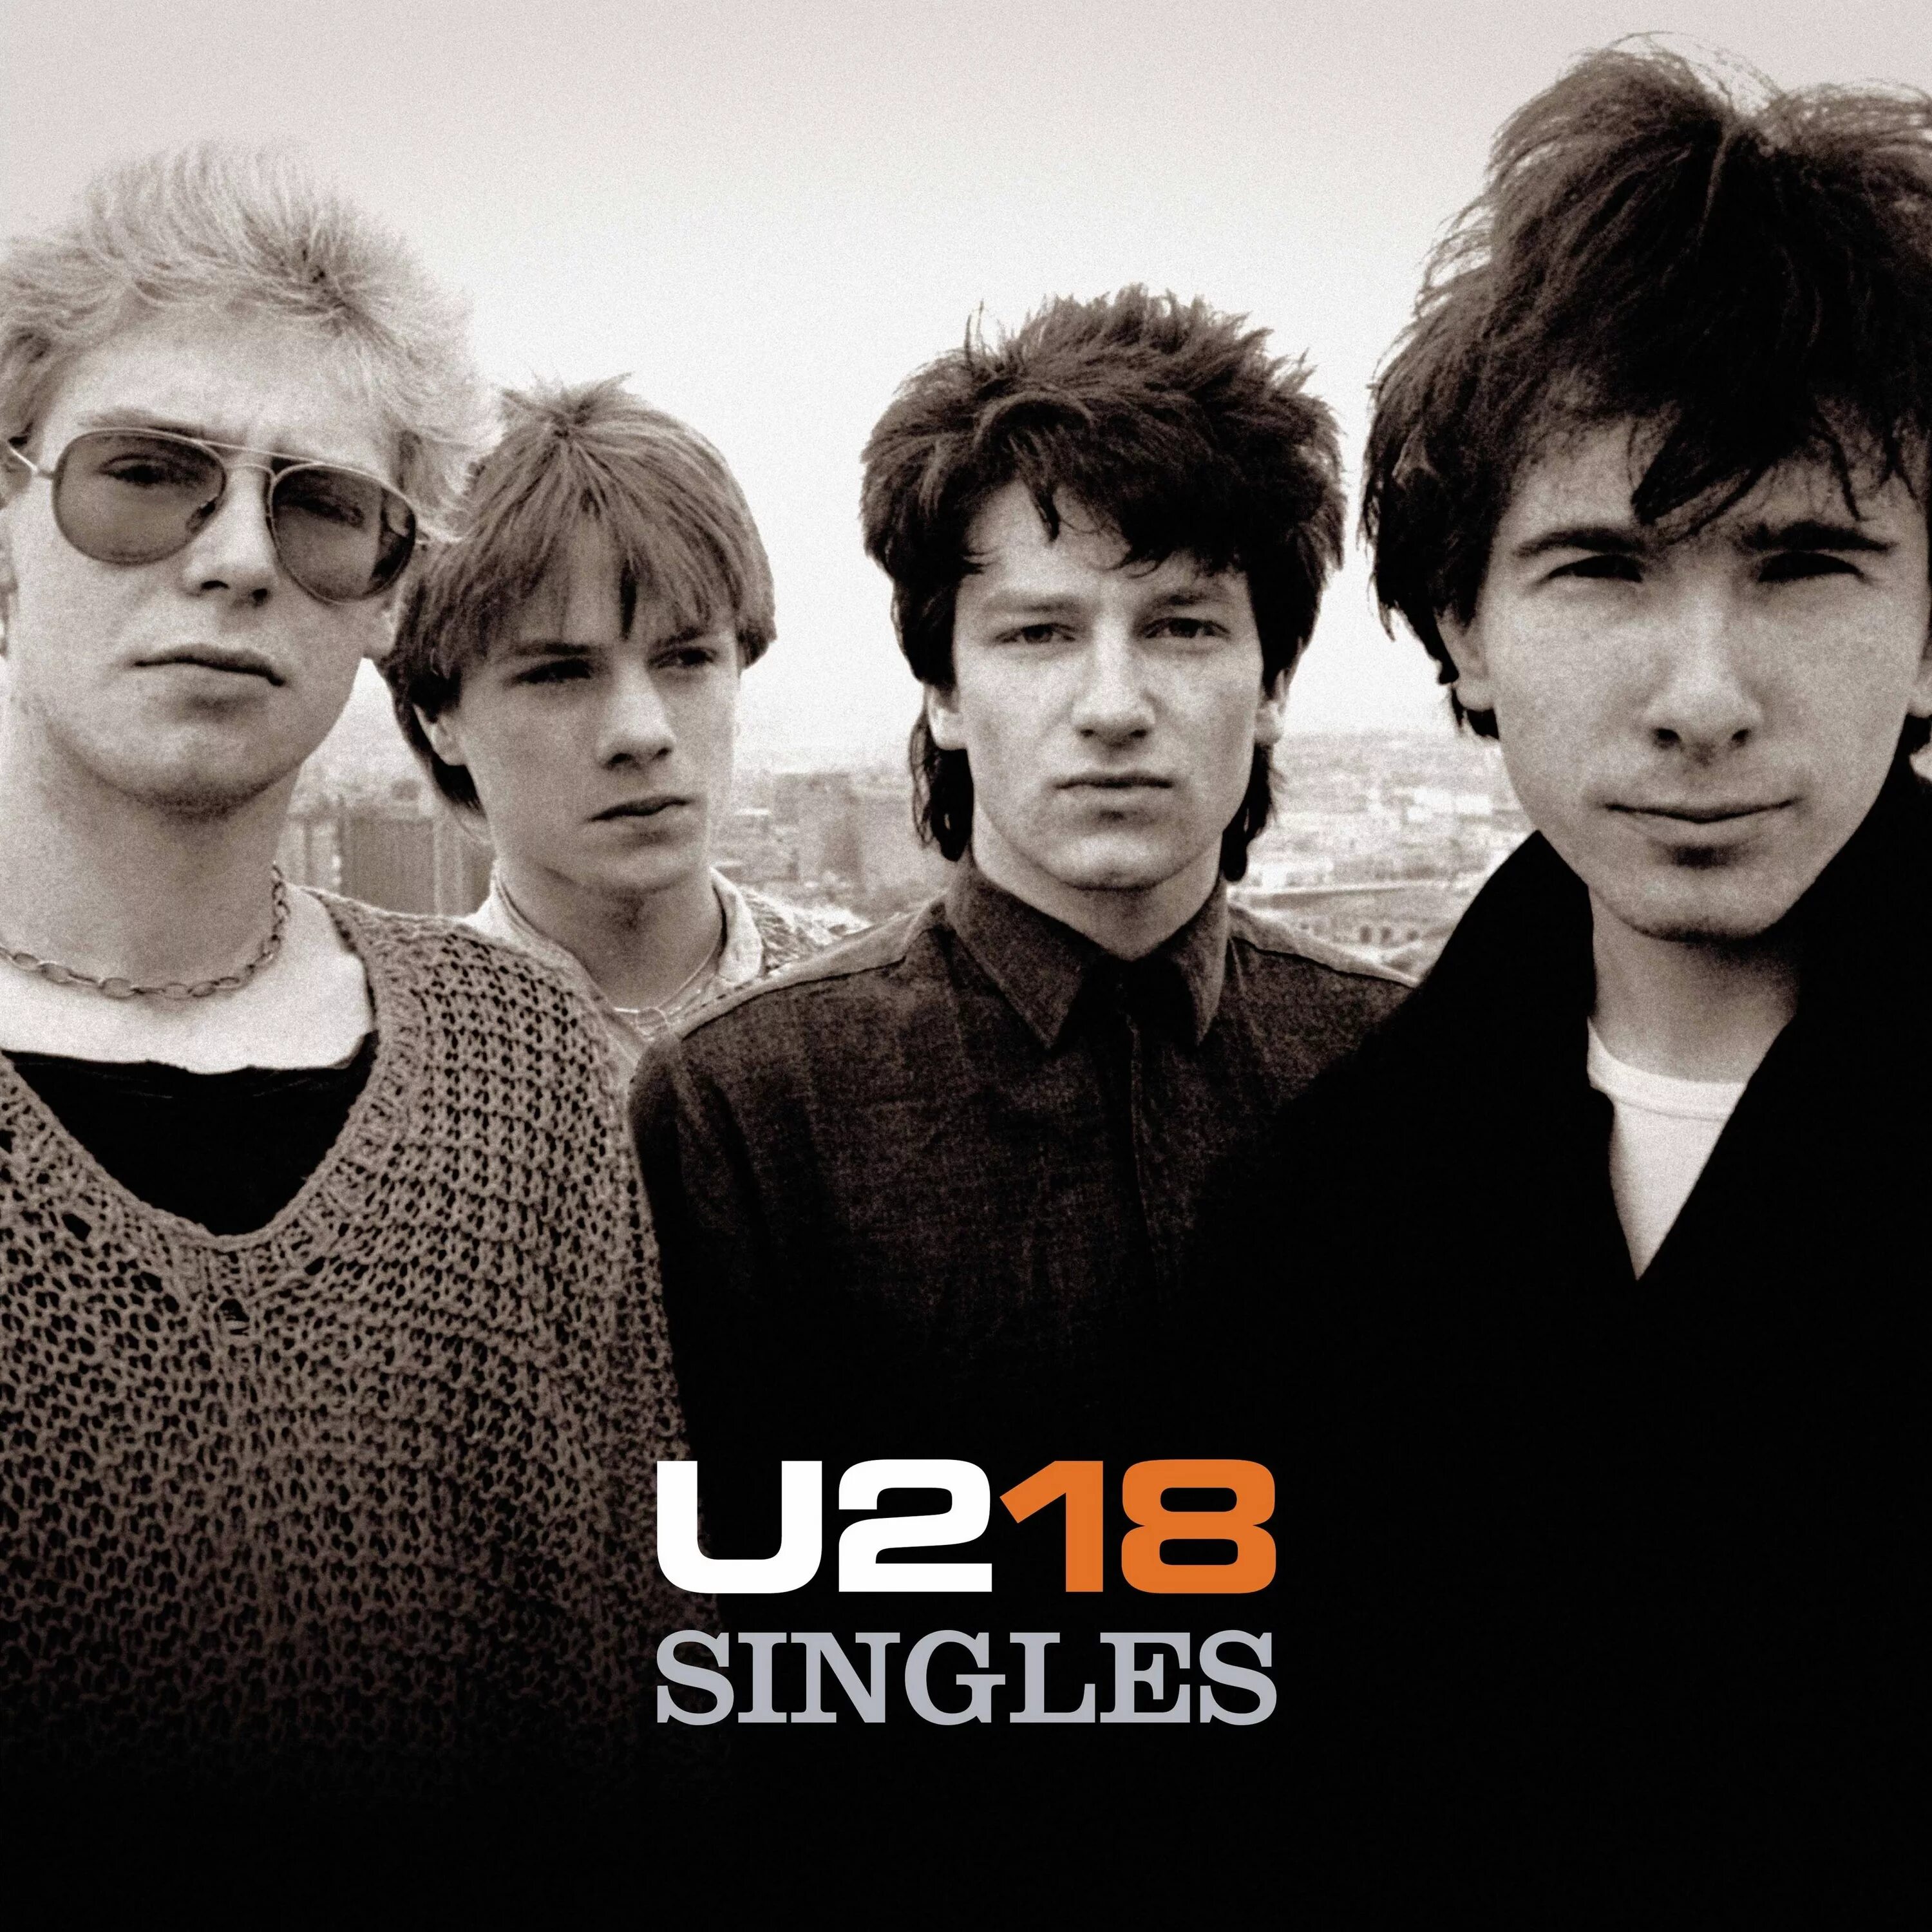 Singles альбом. U2 "18 Singles". U2 "u218 Singles (CD)". U2 в молодости. U2 albums.